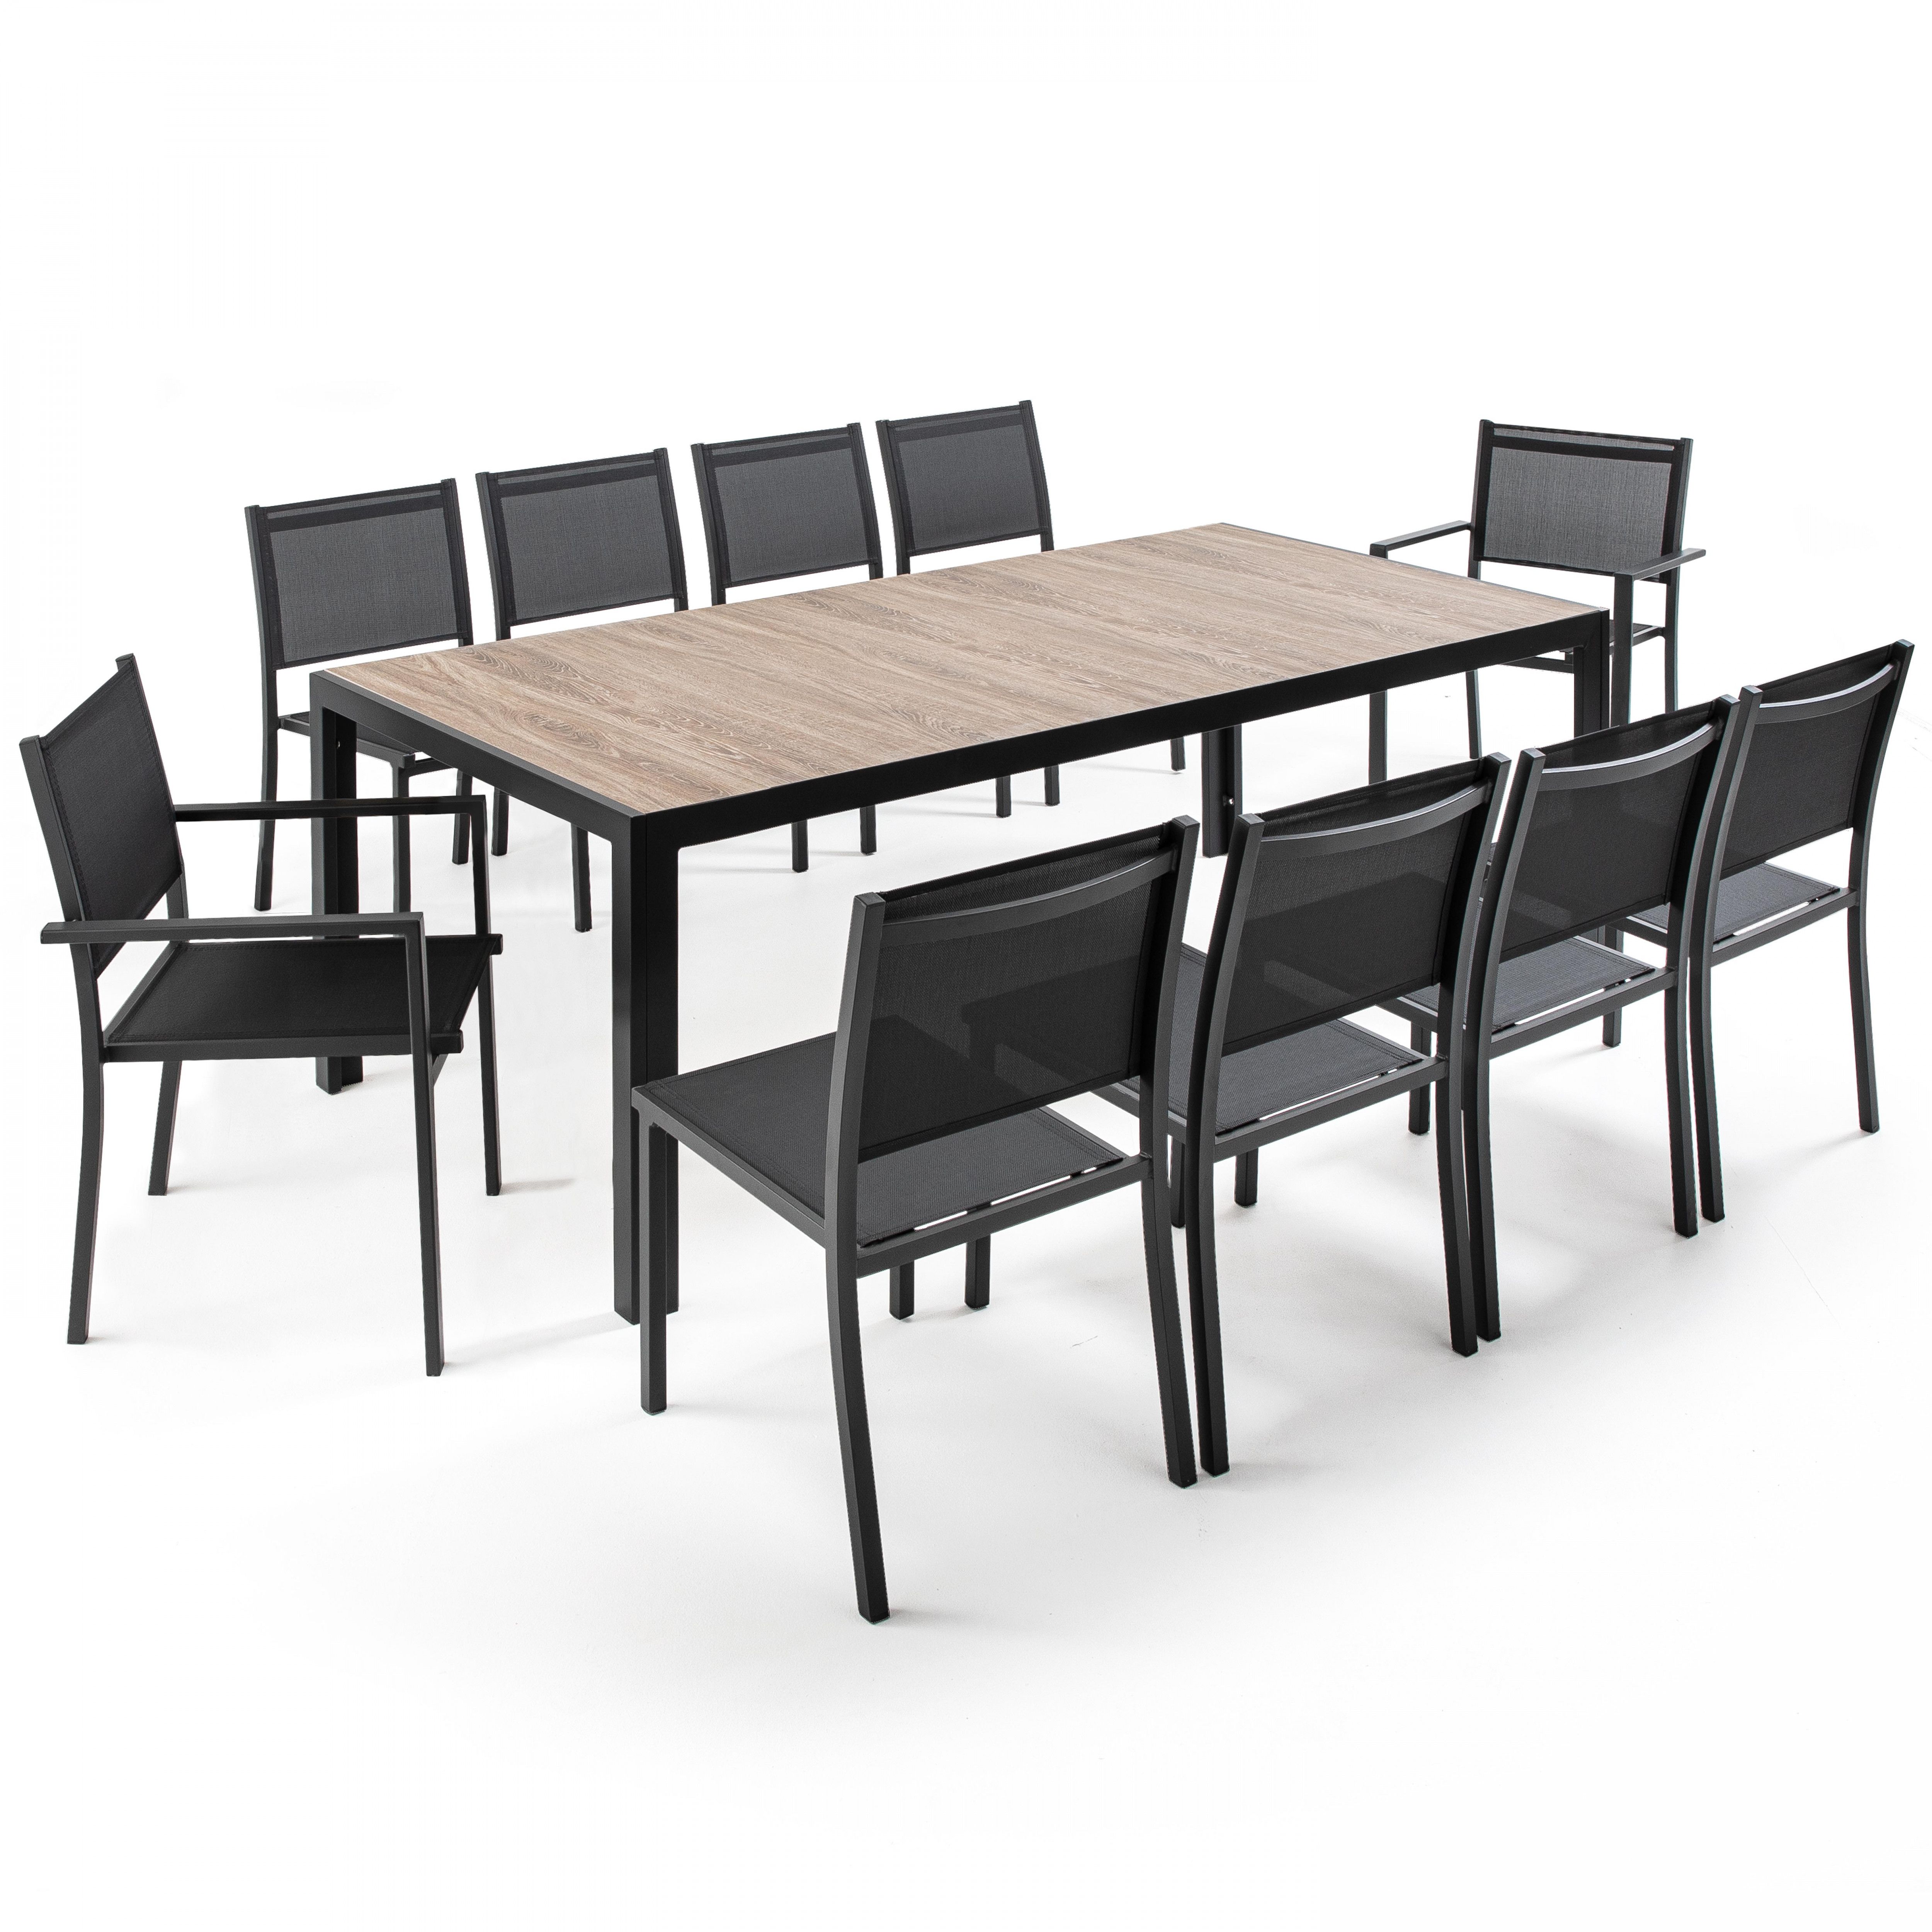 Ensemble table rectangulaire (206 x 100 x 74,5 cm) avec 8 chaises et 2 chaises avec accoudoirs